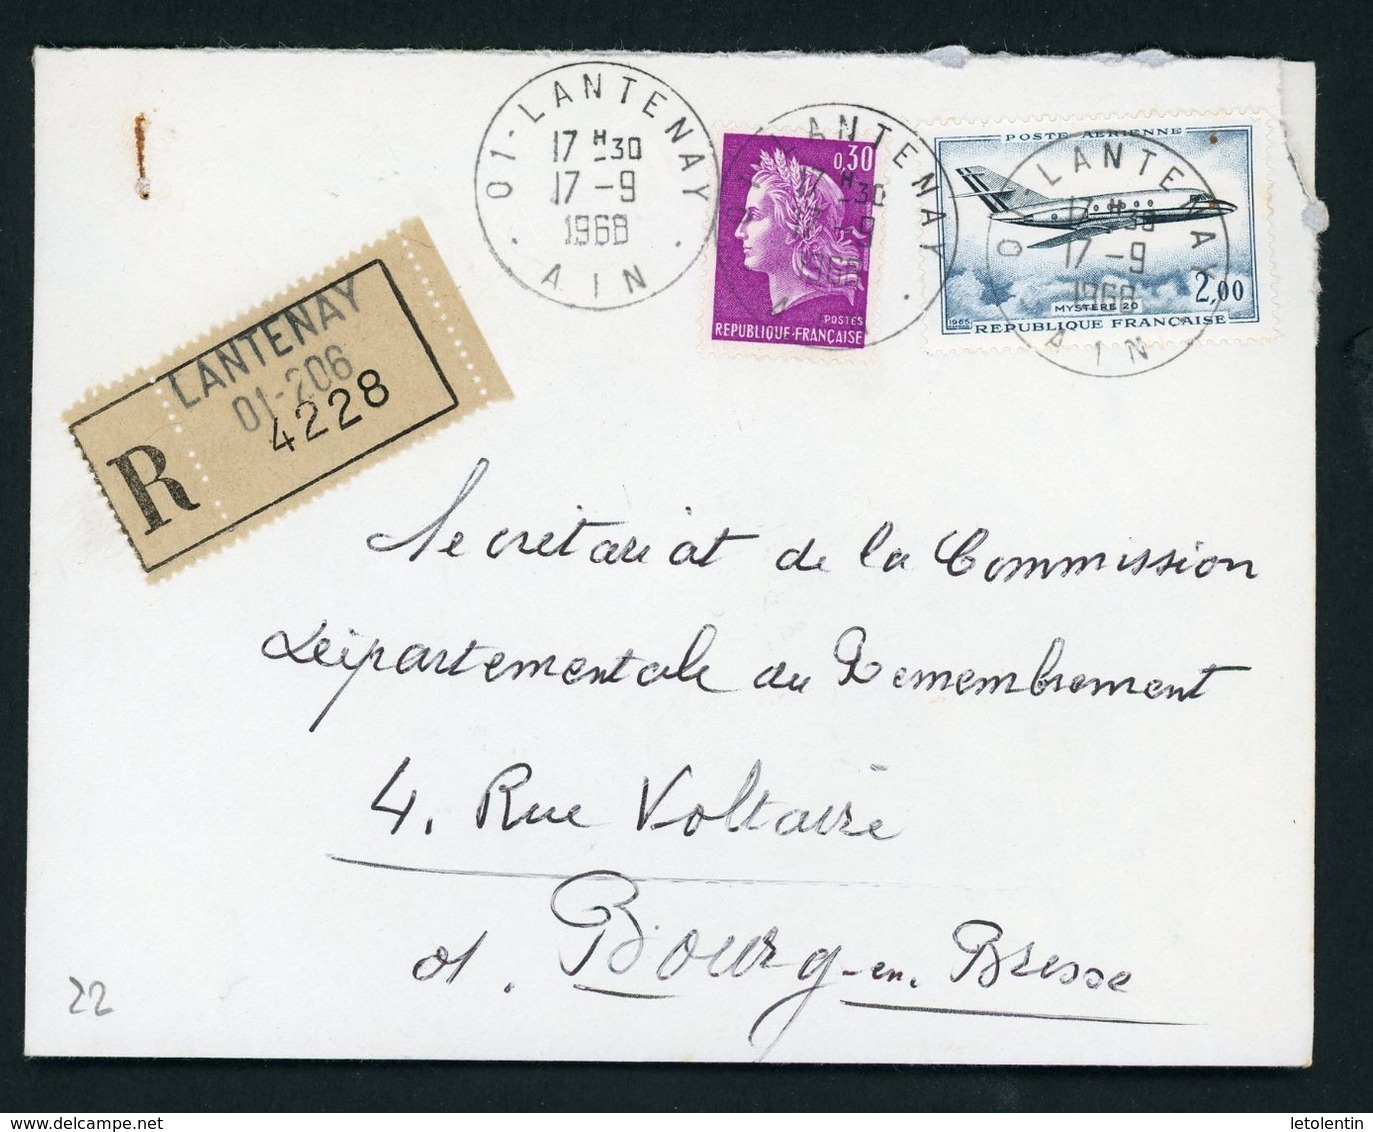 FRANCE - 0,30 TYPE CHEFFER - N° Yvert  1536 EN COMPLEMENT SUR LR DE LANTENAY DU 17/9/68 - 1967-1970 Marianne De Cheffer